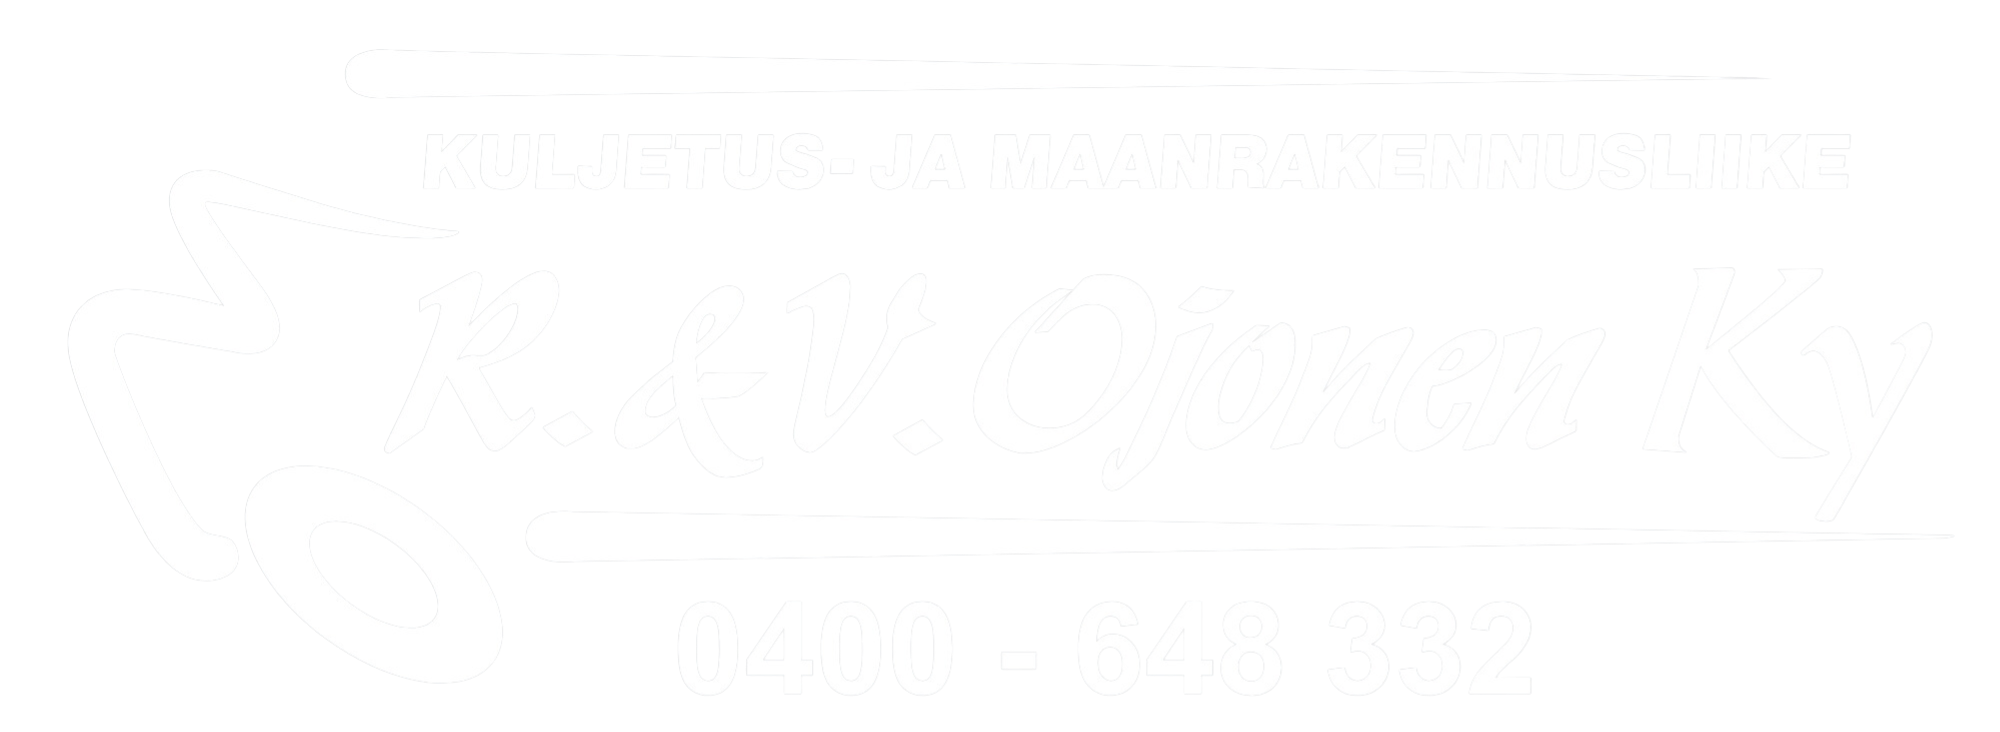 kuljetus- ja maanrakennusliike R & V ojonen logo